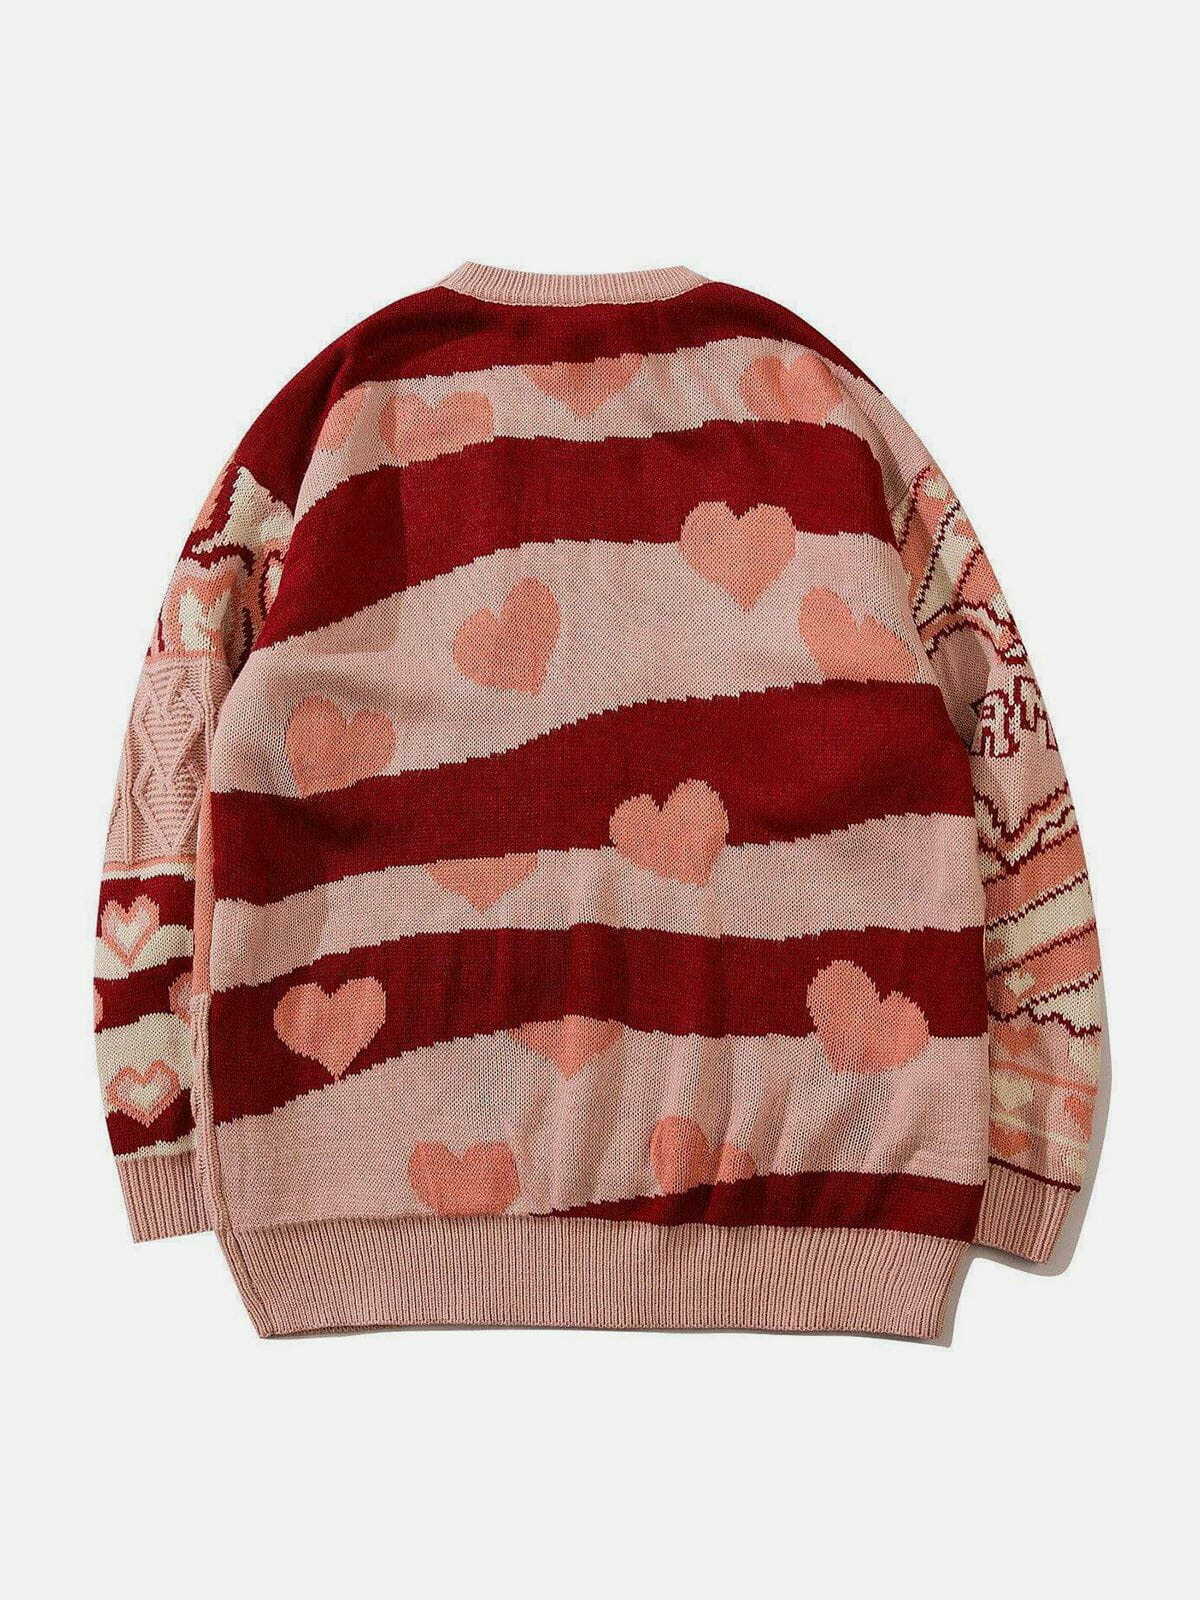 knit love sweater edgy y2k streetwear icon 5092